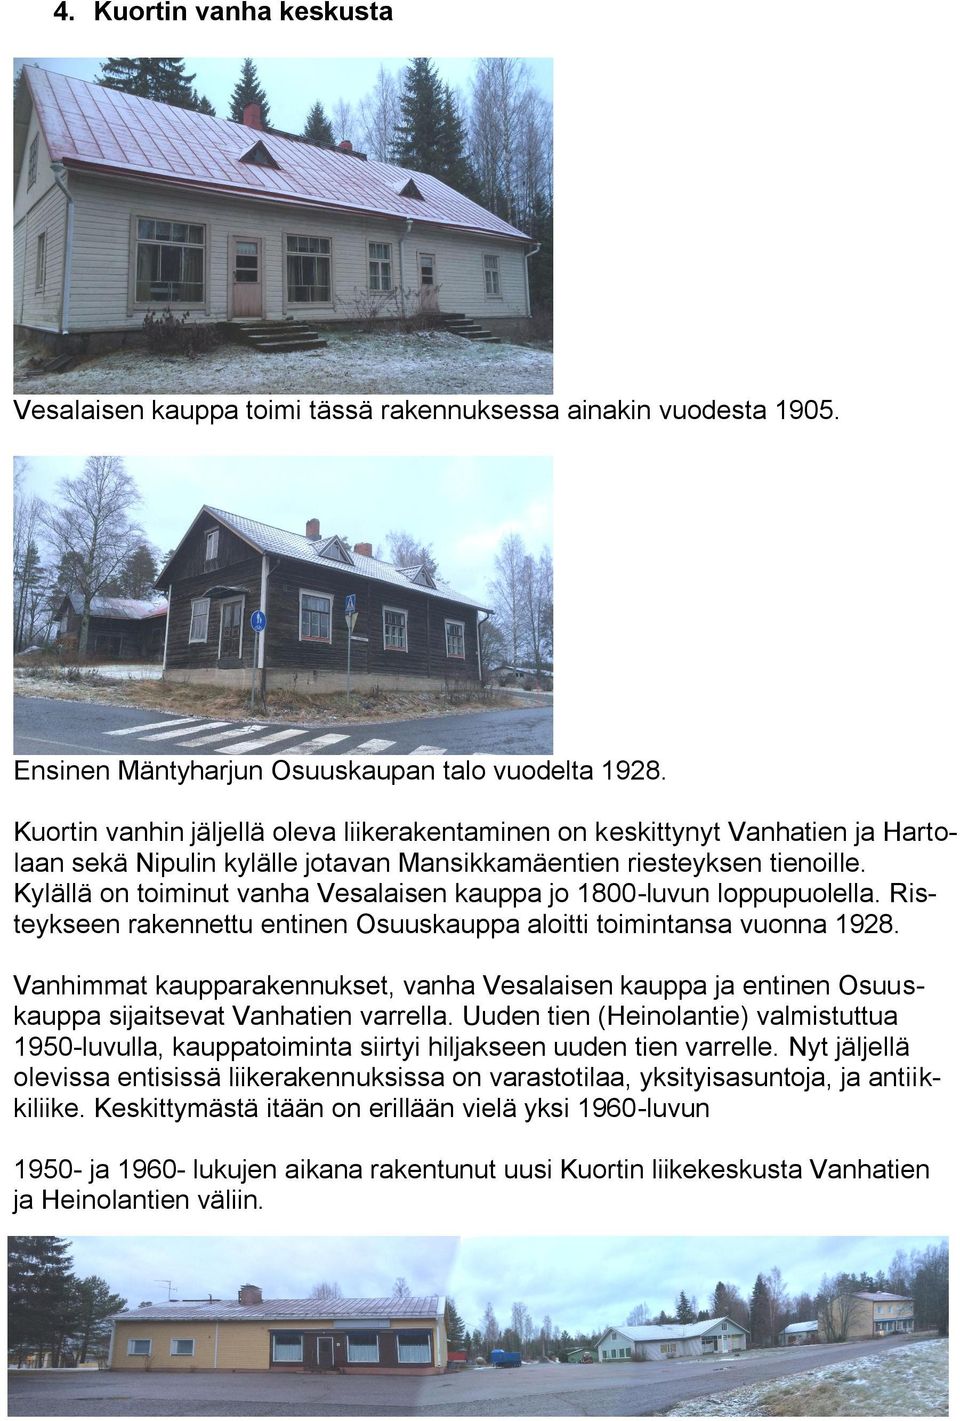 Kylällä on toiminut vanha Vesalaisen kauppa jo 1800-luvun loppupuolella. Risteykseen rakennettu entinen Osuuskauppa aloitti toimintansa vuonna 1928.